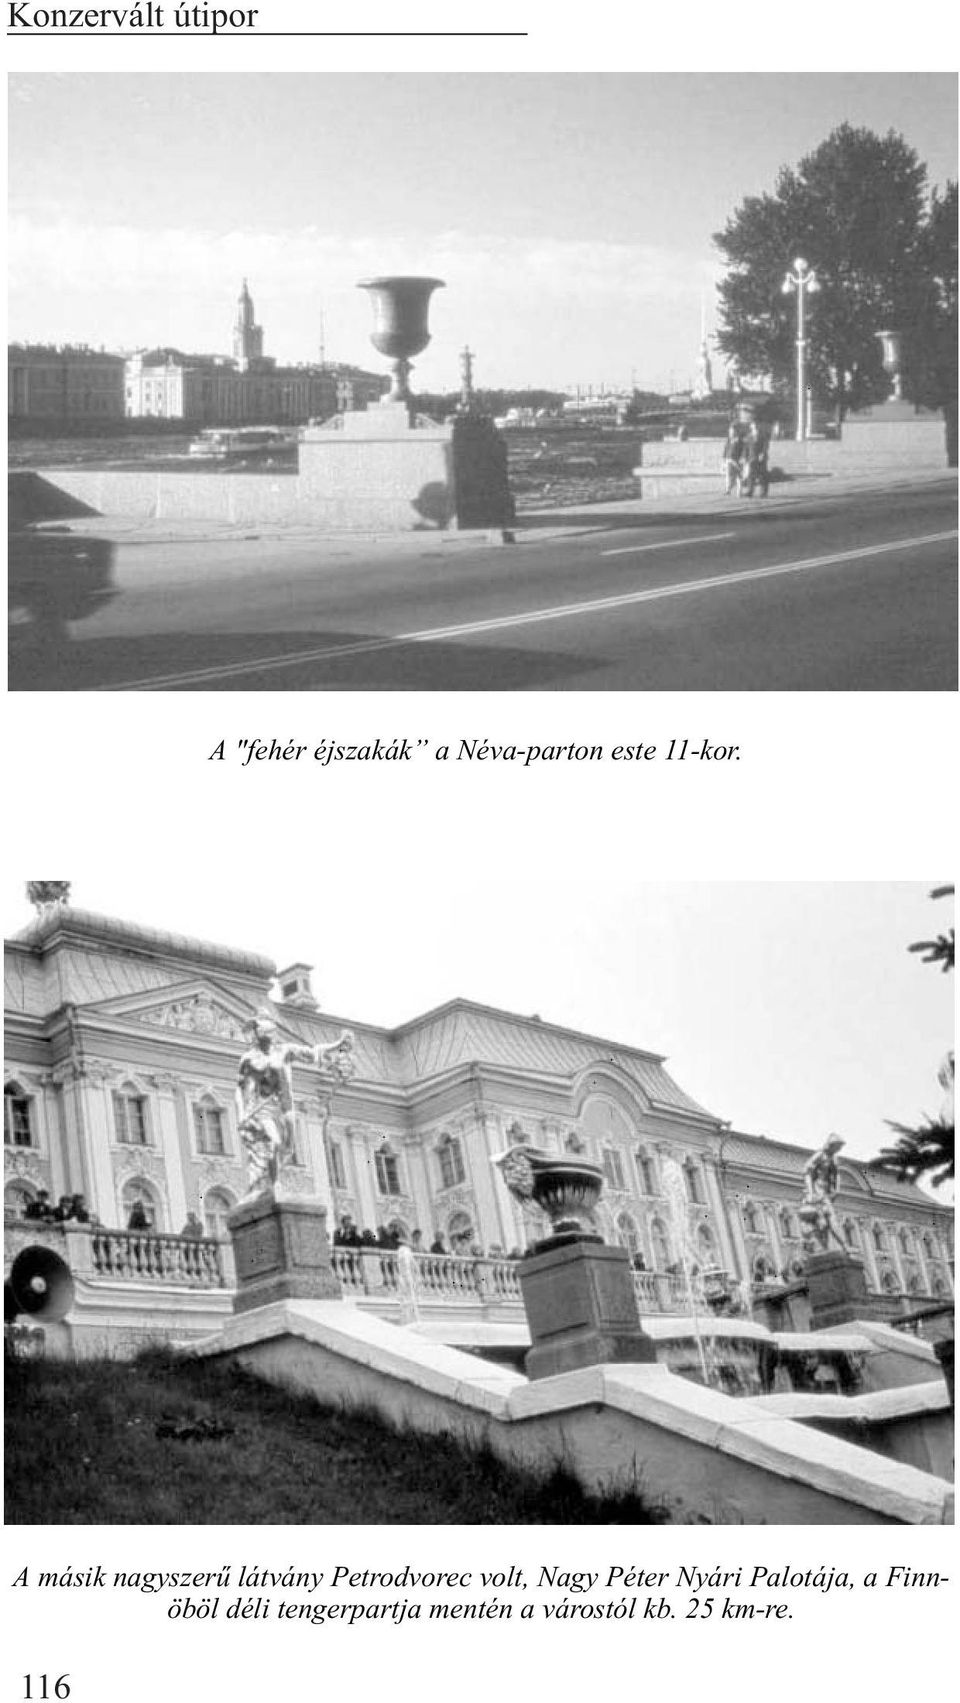 A másik nagyszerû látvány Petrodvorec volt, Nagy